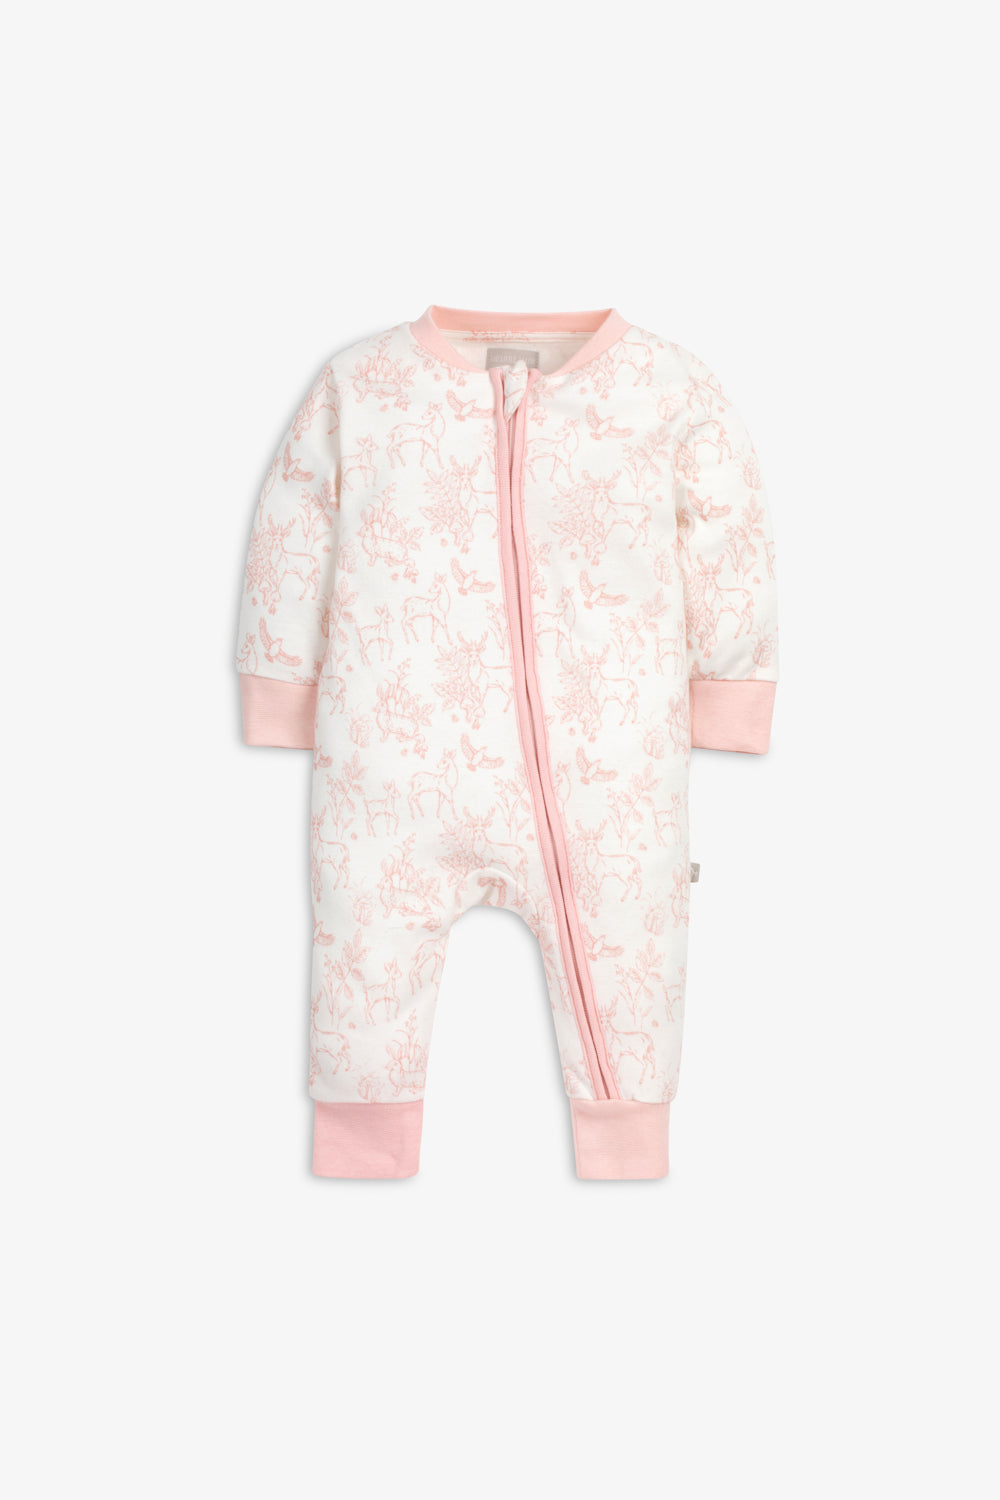 Sleepsuit/Onesie, rose pink woodland print